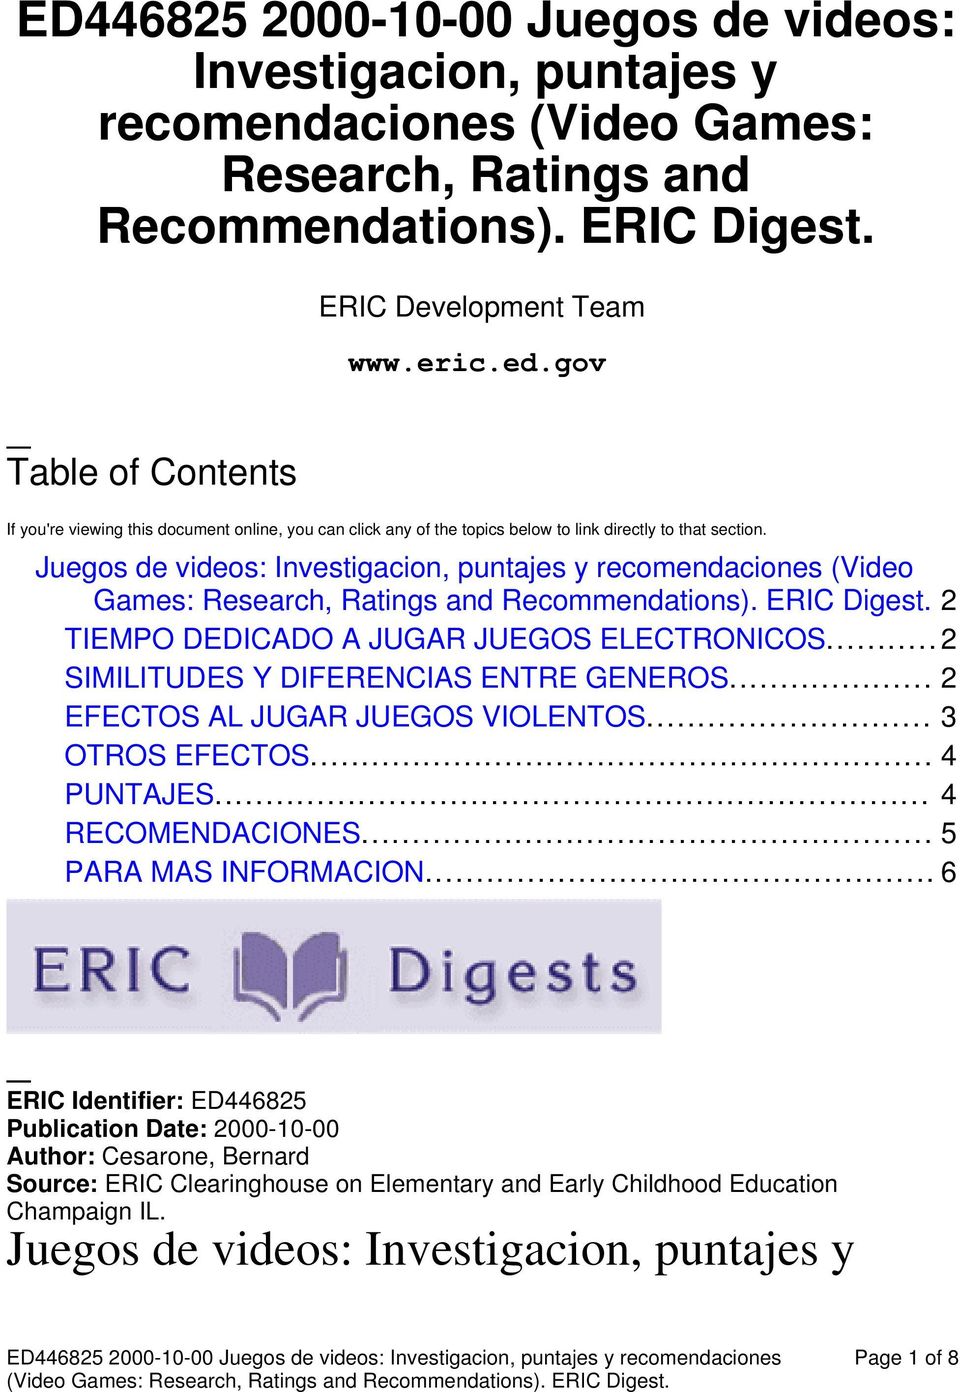 Juegos de videos: Investigacion, puntajes y recomendaciones (Video Games: Research, Ratings and Recommendations). ERIC Digest. 2 TIEMPO DEDICADO A JUGAR JUEGOS ELECTRONICOS.